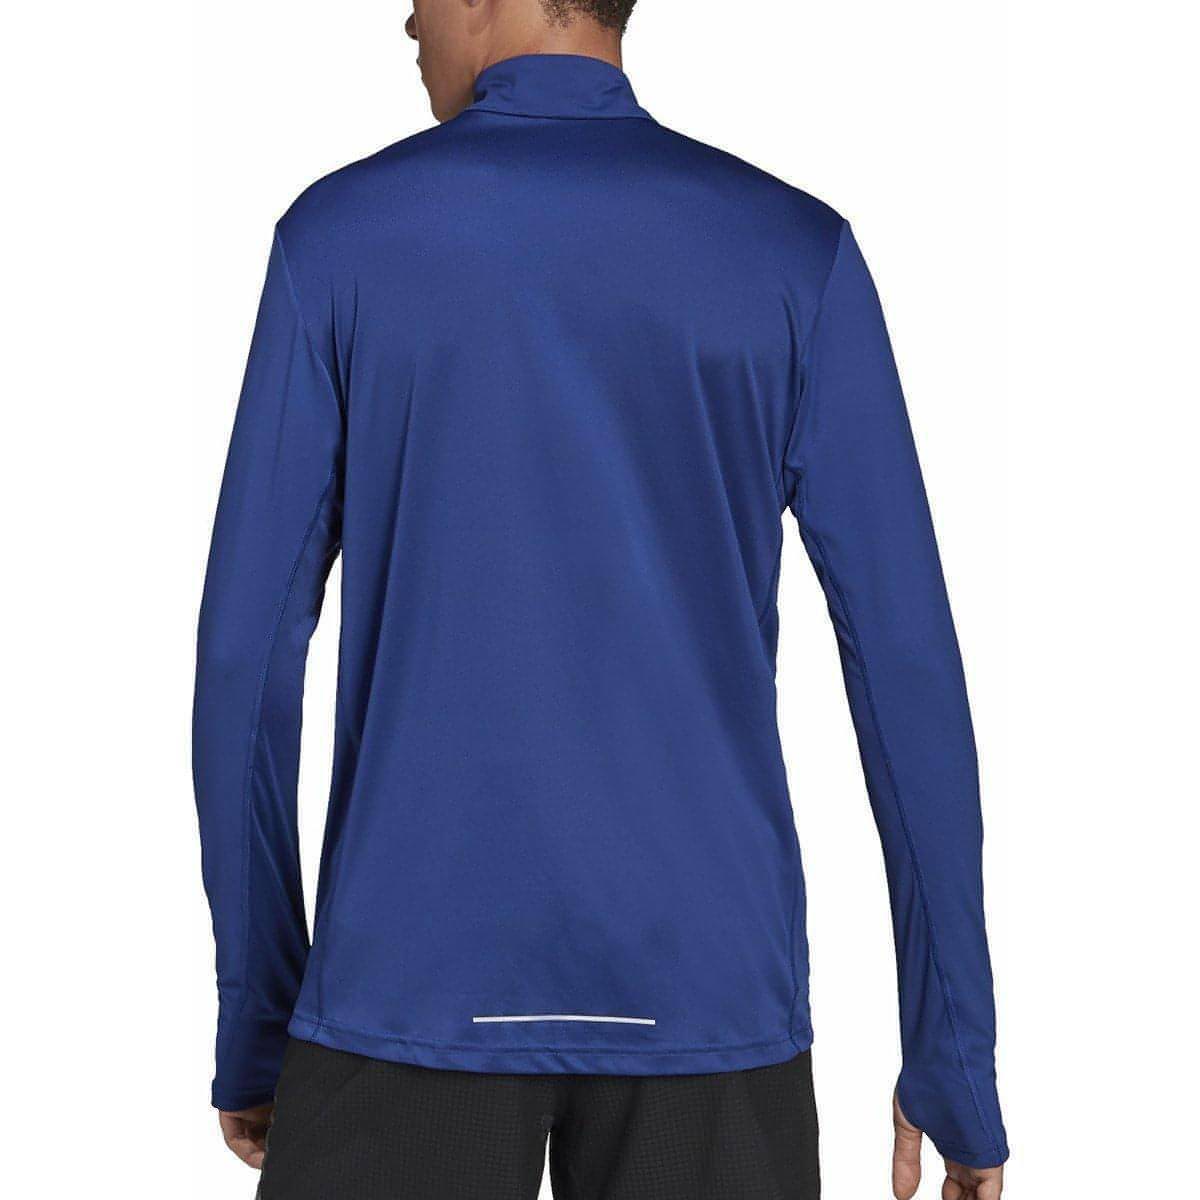 The Half – Top Zip adidas Running Blue Mens Sleeve Fitness Long Start Own - Run